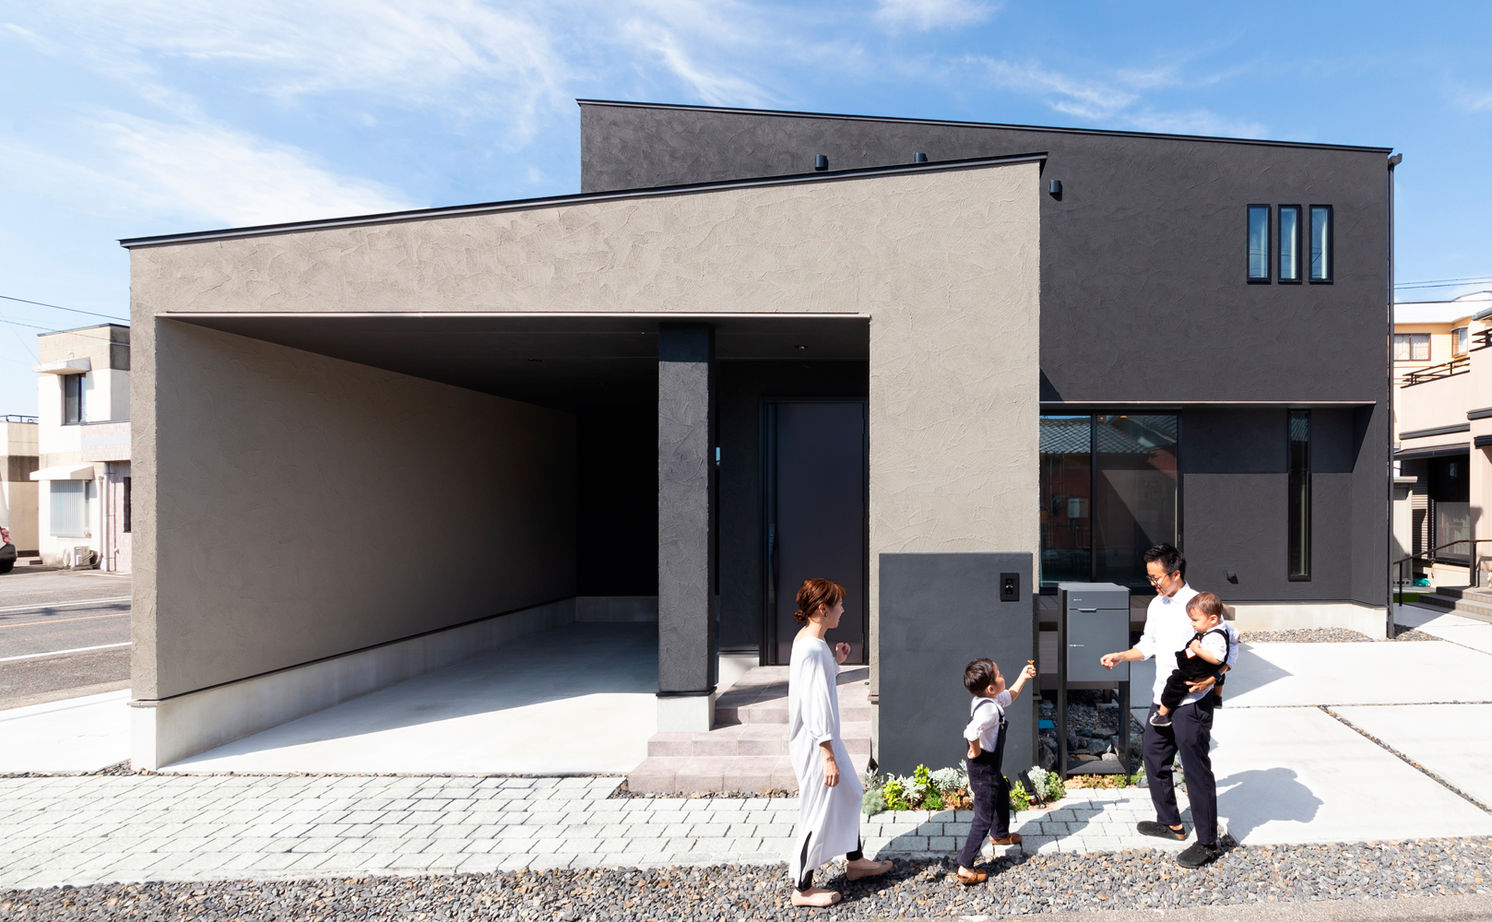 Suumo ガレージ シンプルモダン 間取り図あり 塗り壁やタイルの素材感が映える シンプルでいて遊び心ある家 クラシスホーム 緑店の建築実例詳細 注文住宅